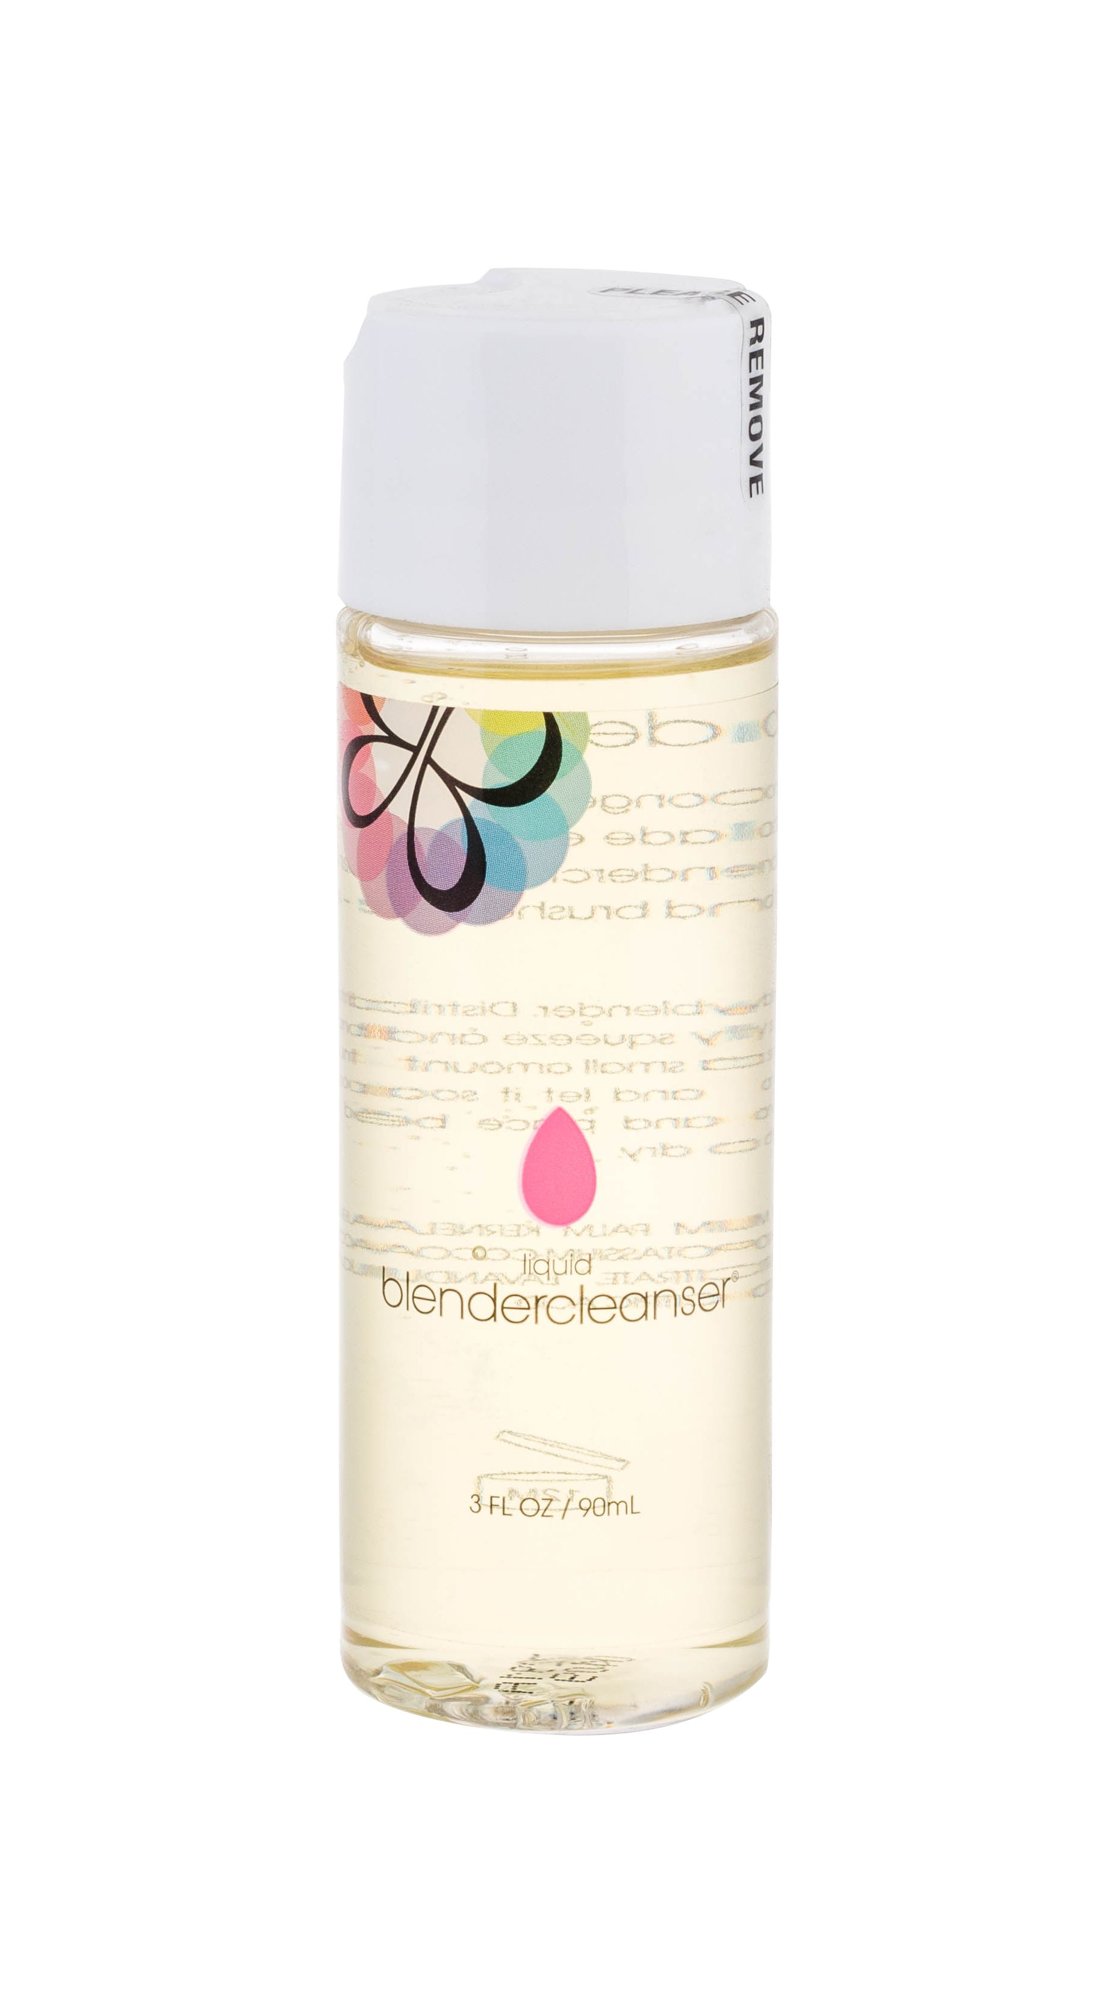 beautyblender cleanser liquid blendercleanser aplikatorius